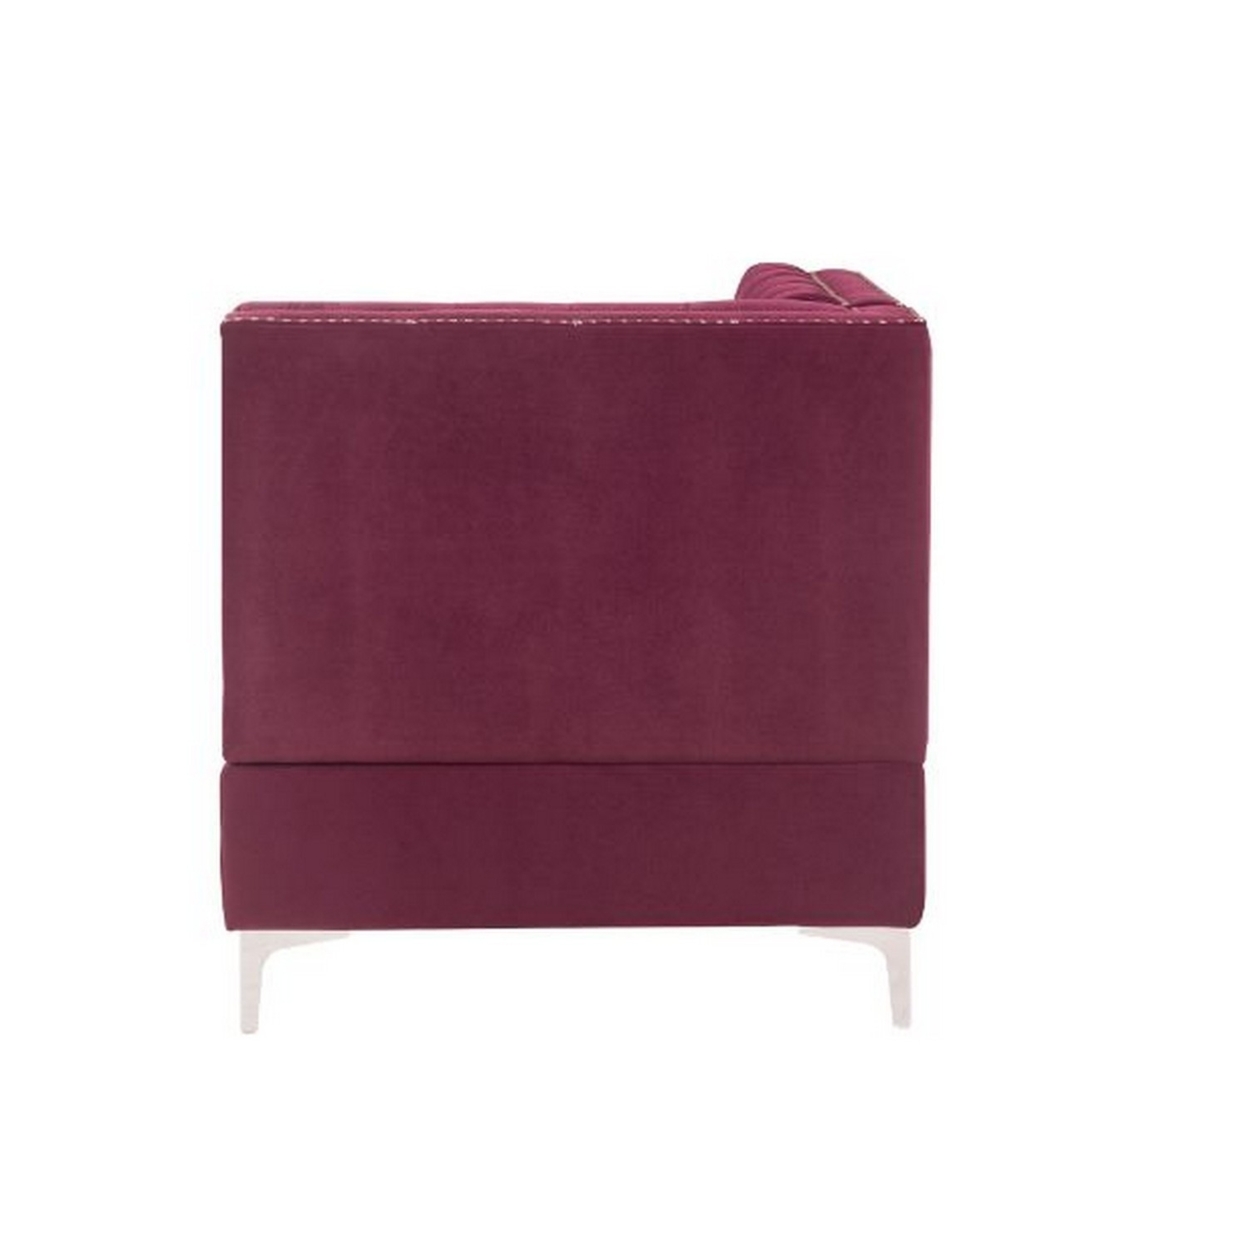 Corner Wedge With Velvet Upholstery And Metal Legs, Red- Saltoro Sherpi